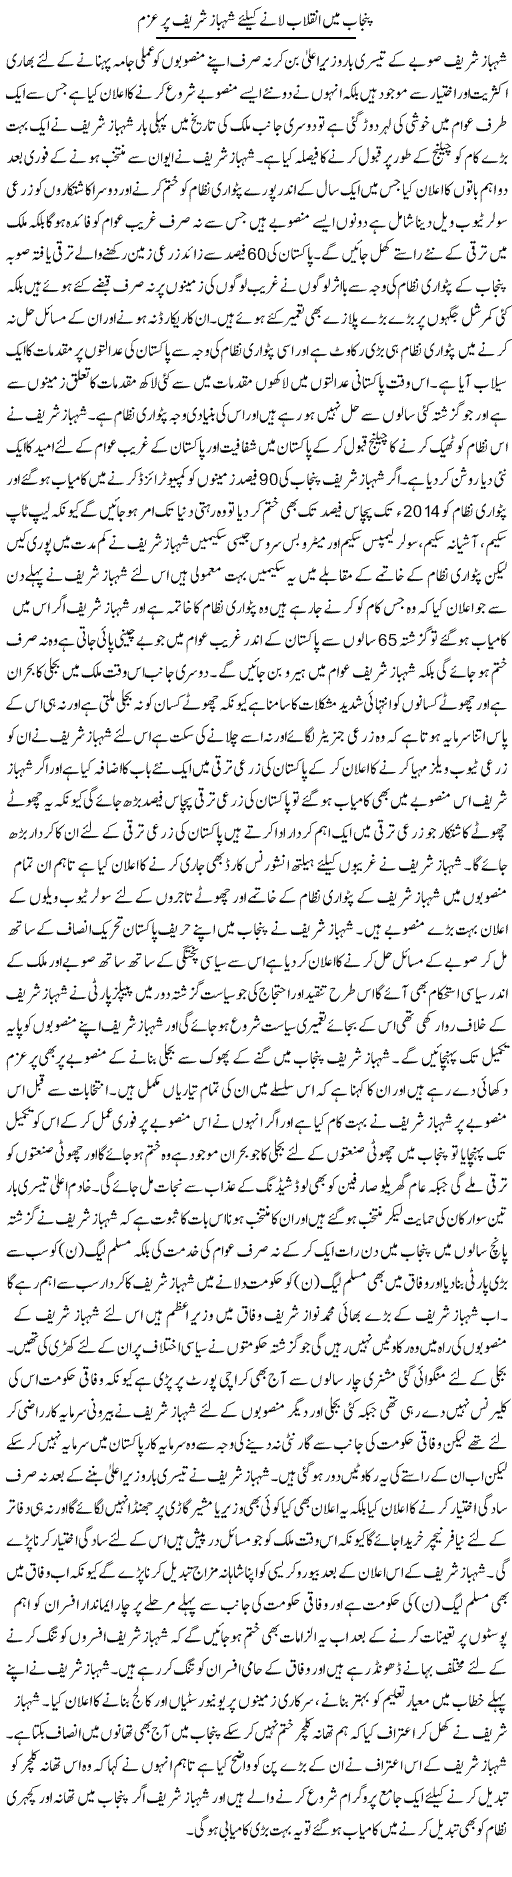 Punjab Mai Inqlaab Lane K Liye Nawaz Sharif Par Azam | Syed Wali Shah Afridi | Daily Urdu Columns